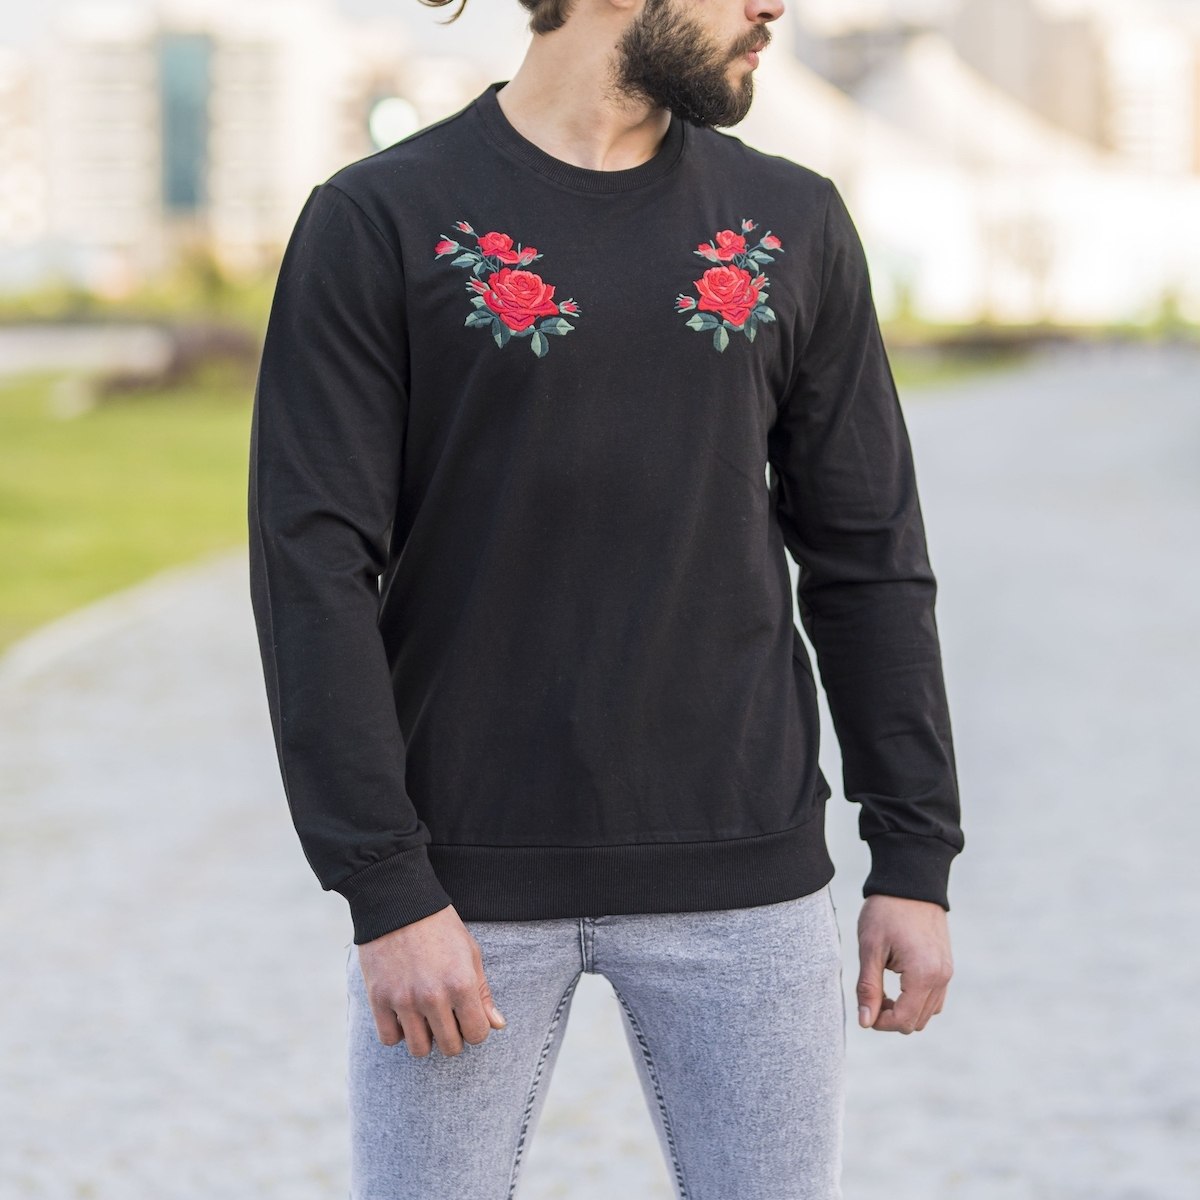 Herren Sweatshirt mit Rosen Details an der Brust in schwarz - 3